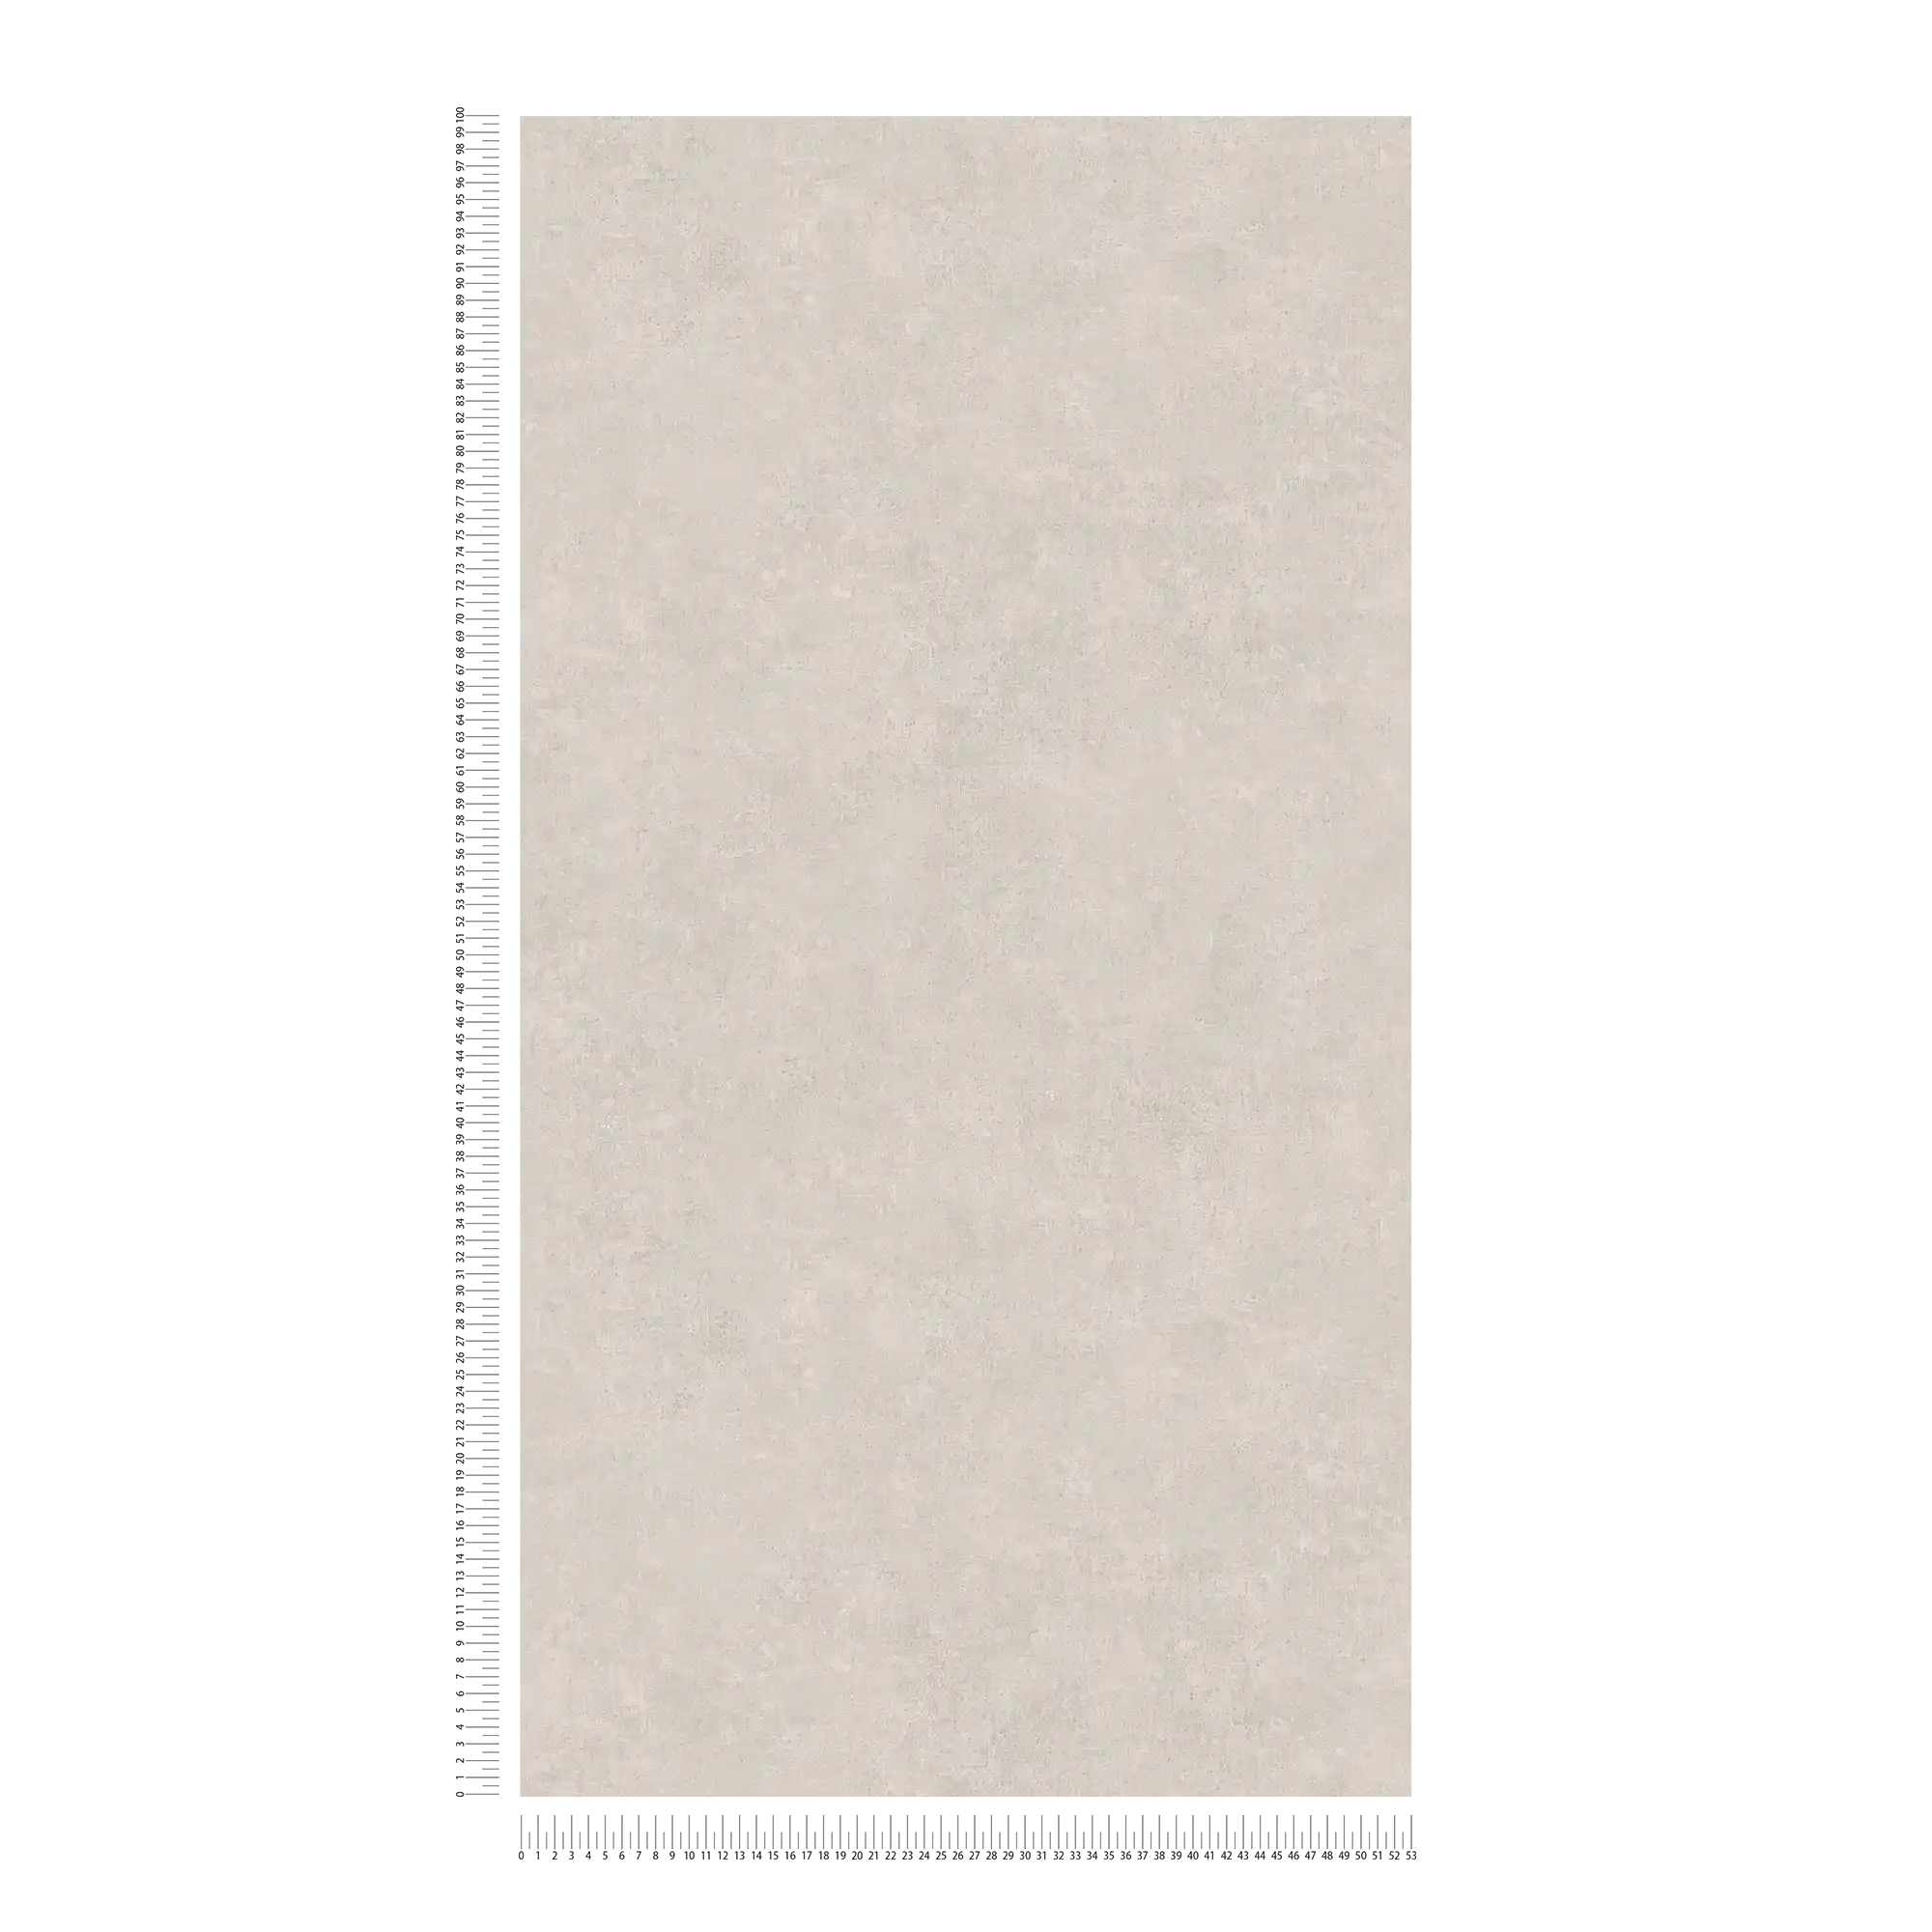             Papier peint uni avec hachures de couleur, look vintage - crème, gris
        